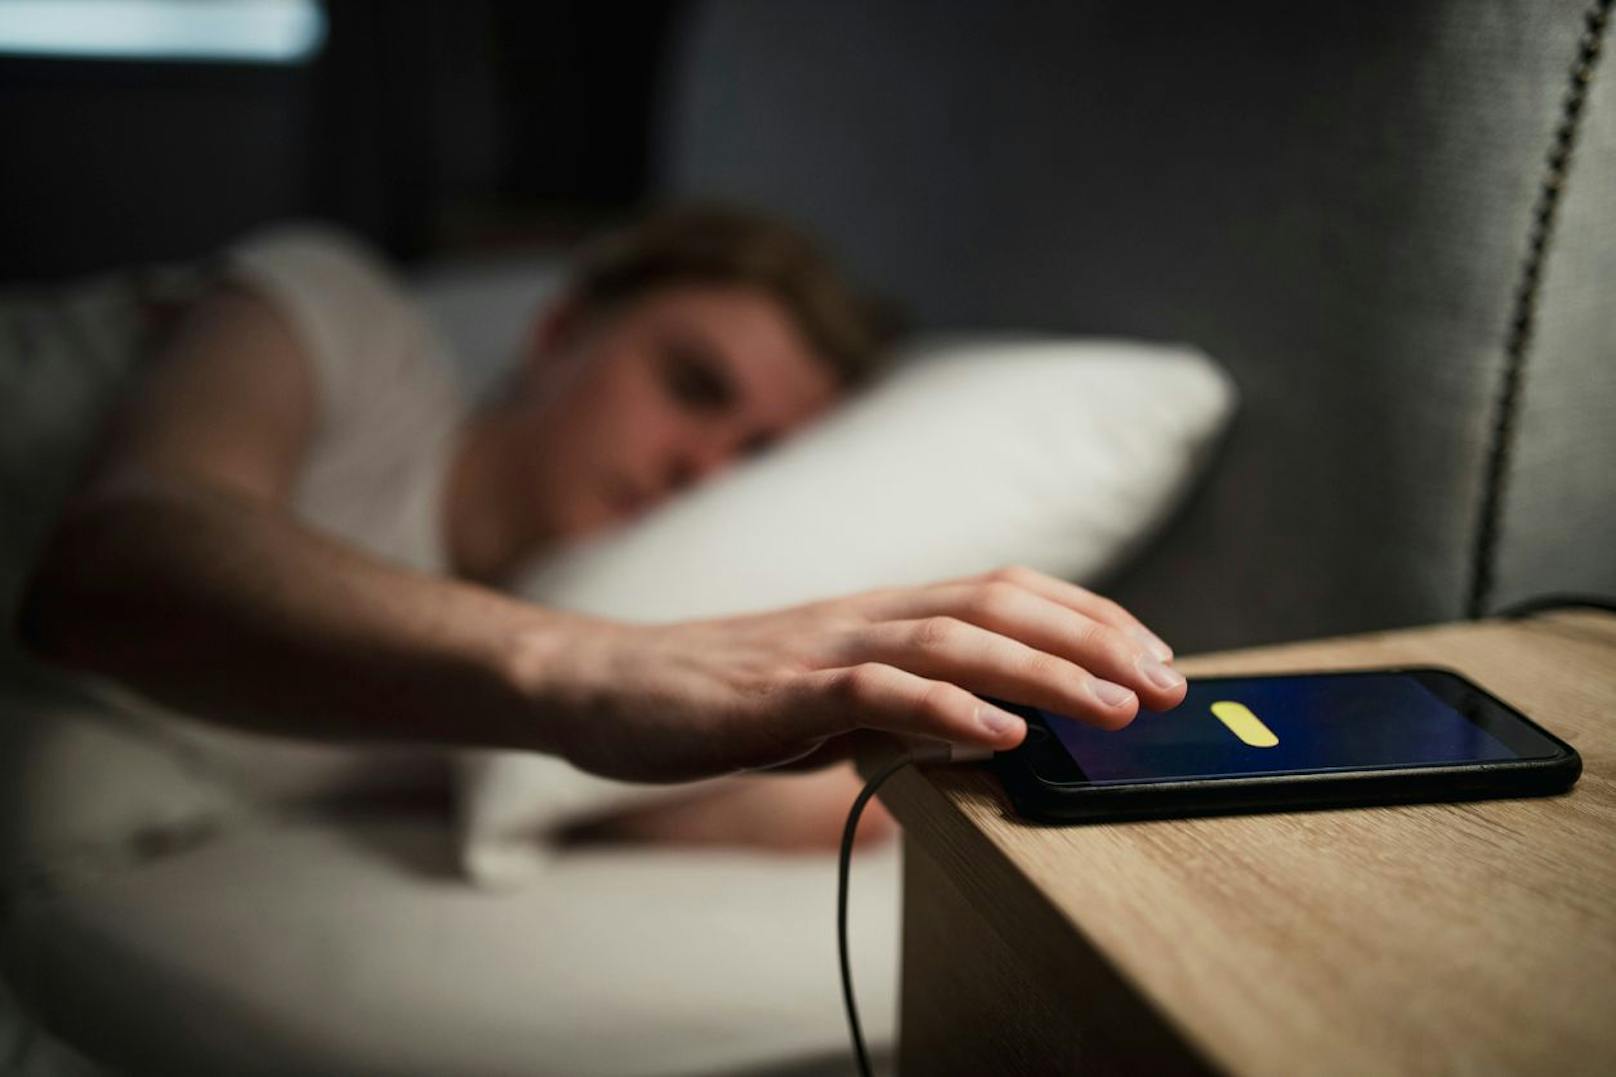 Verzichte lieber auf Power-Naps, denn diese erschweren es dir, abends schlafen zu gehen. Bei starker Müdigkeit darfst du dich hinlegen, solange du deinen Mittagsschlaf auf zehn bis 20 Minuten beschränkst.